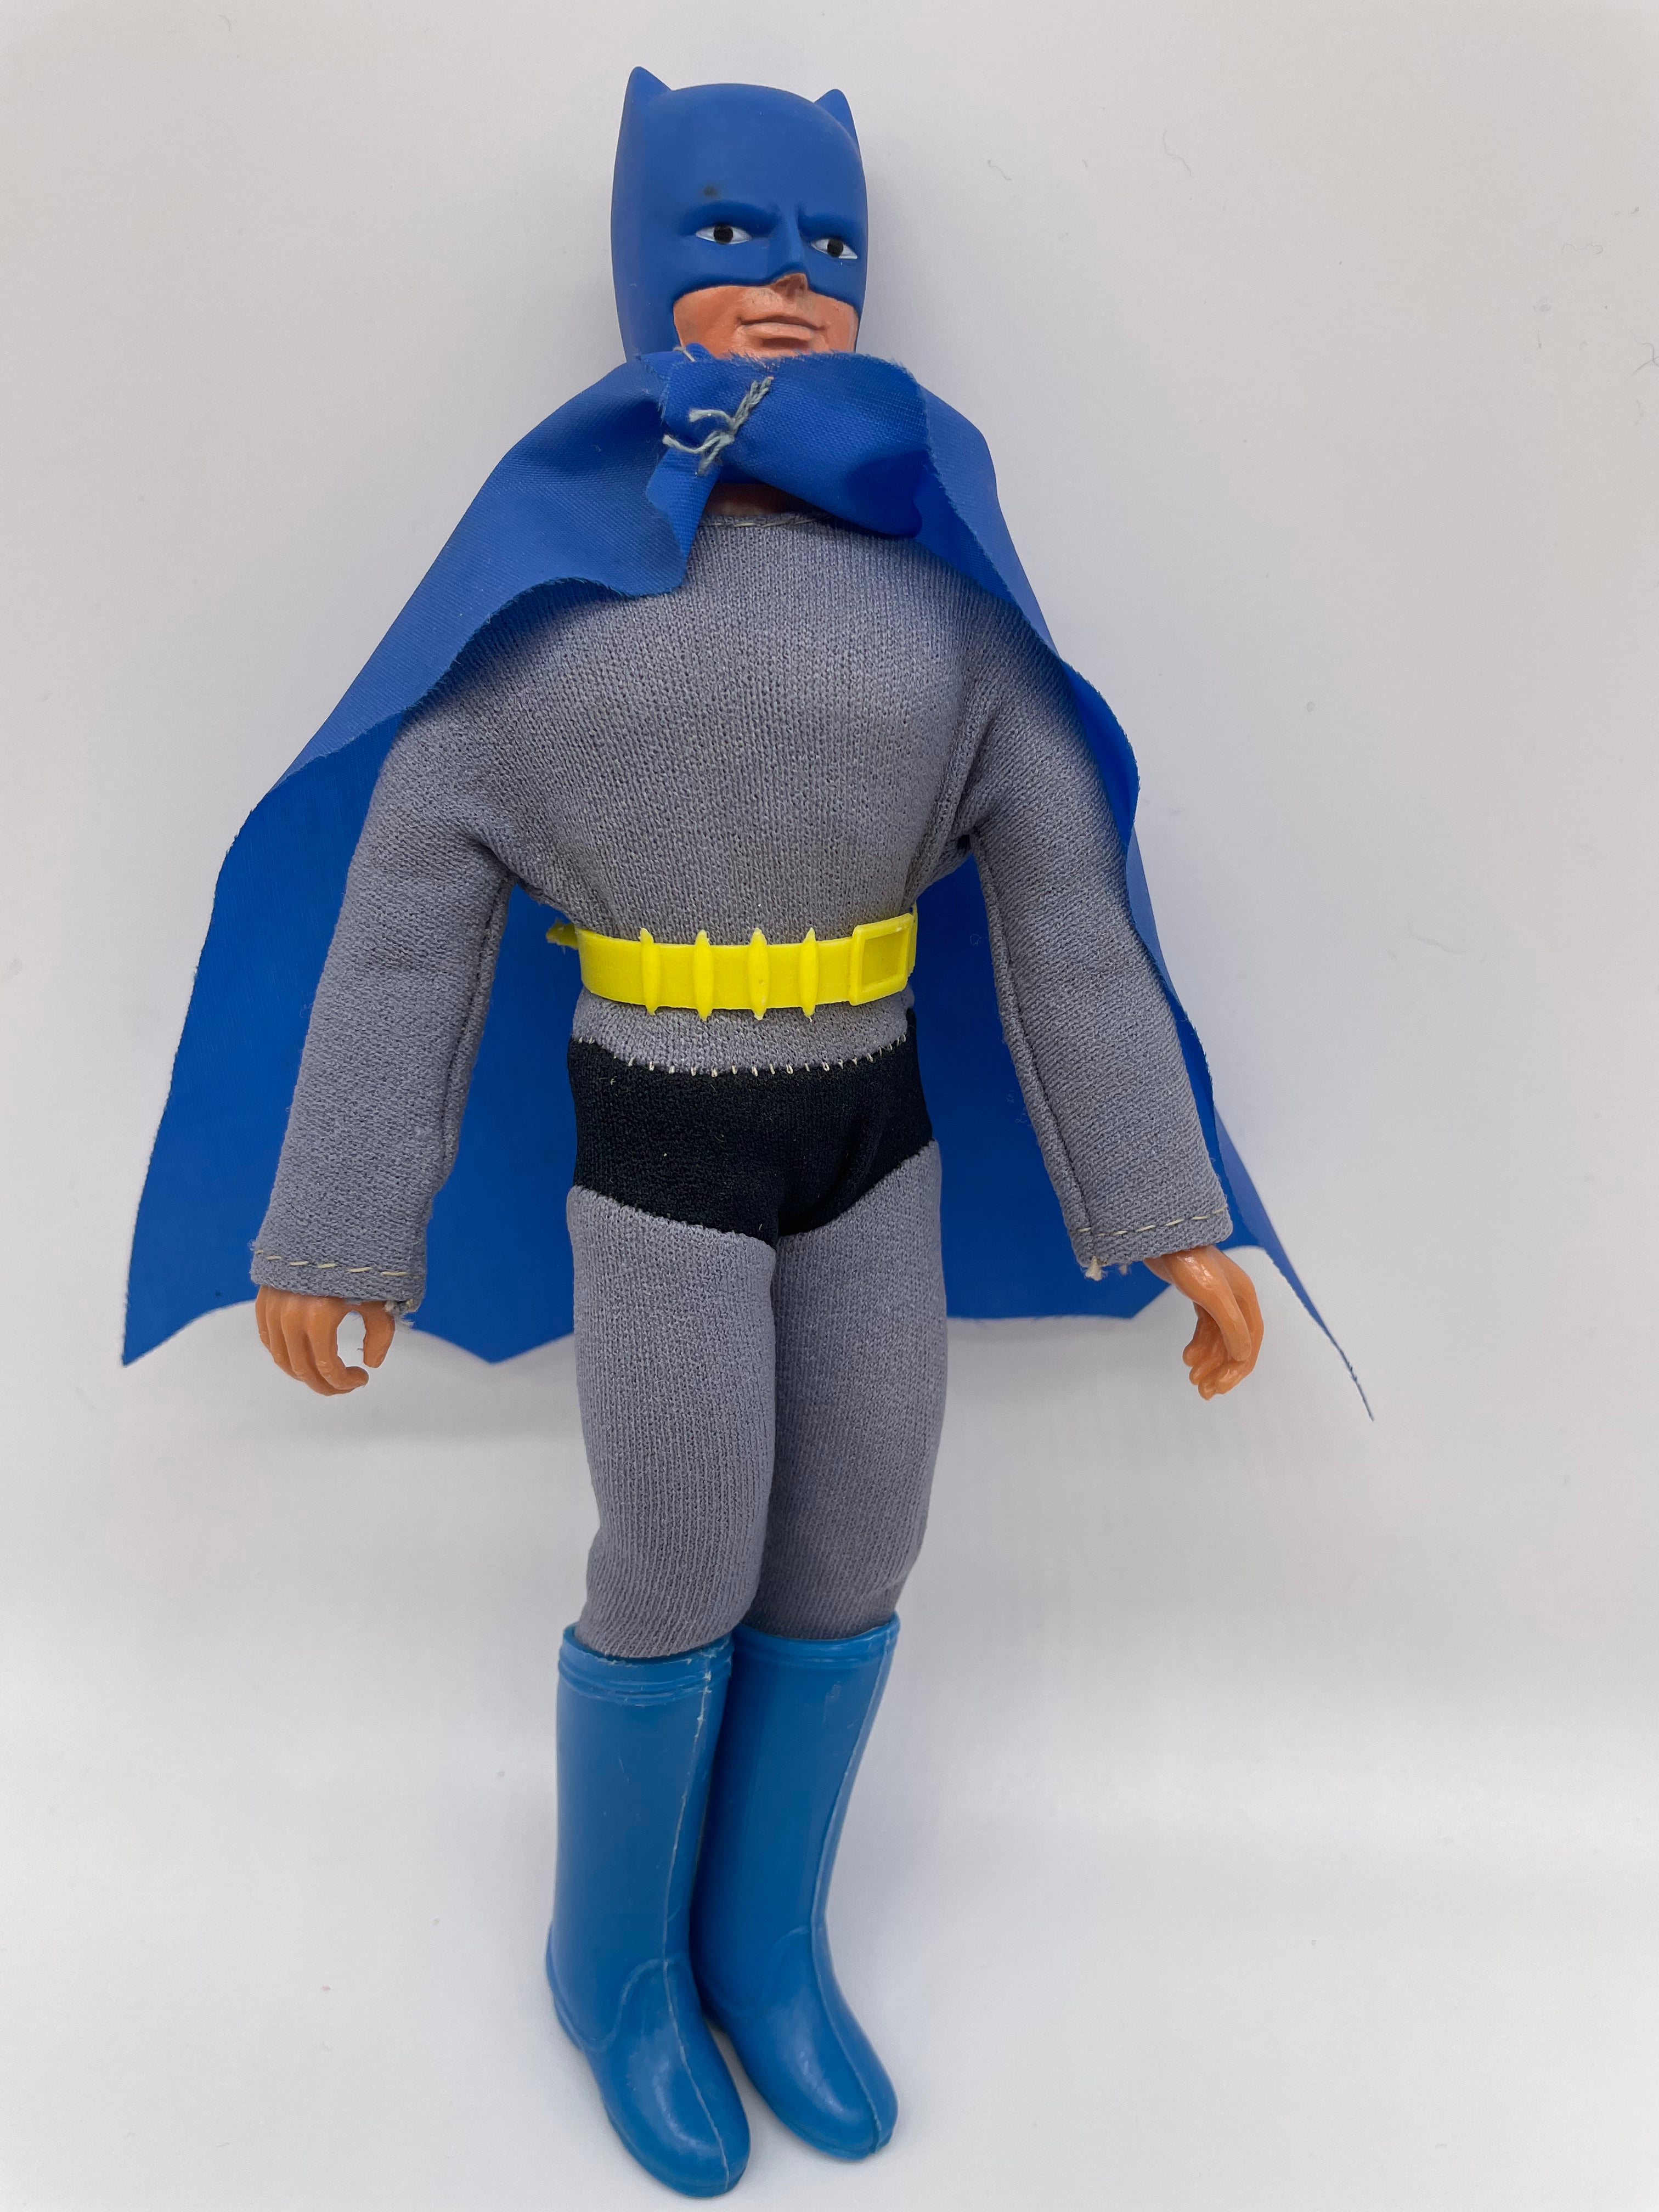 MEGO - Batman vintage – PBG Comics and Toys